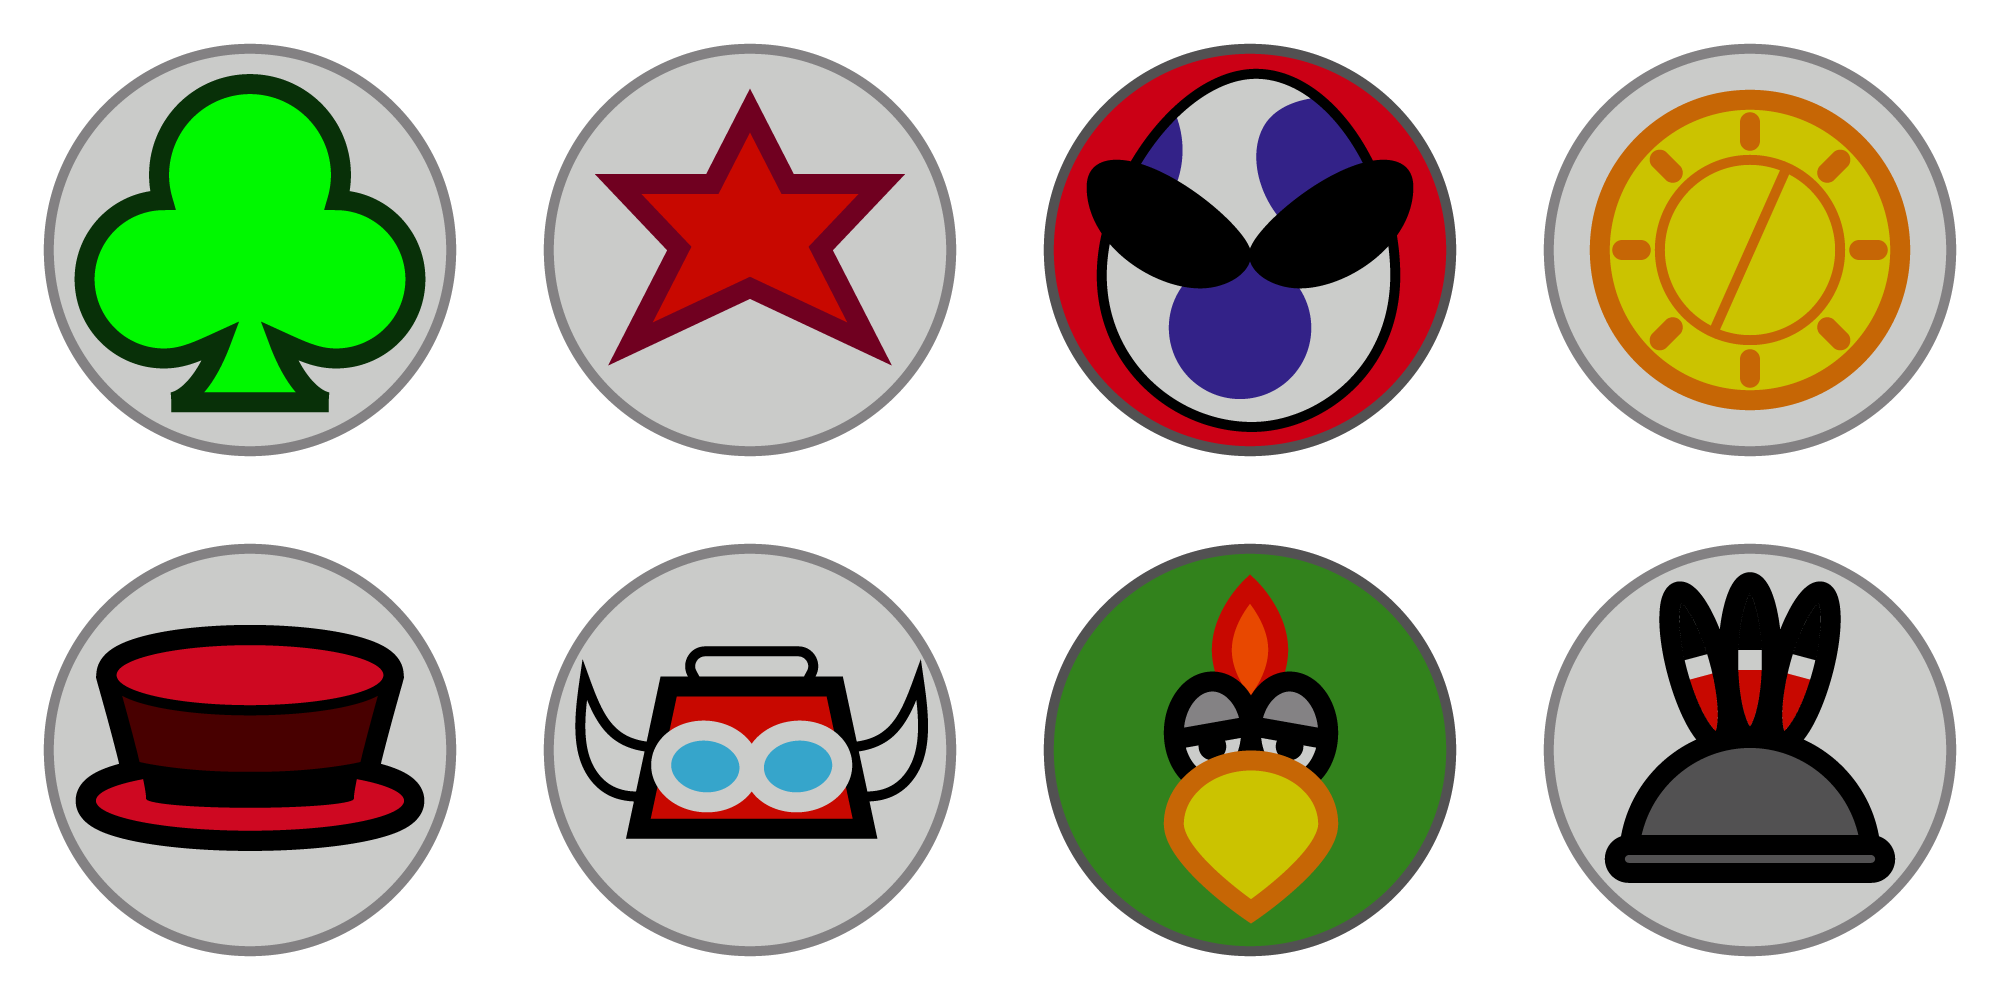 Super-Mario-RPG-emblems.png